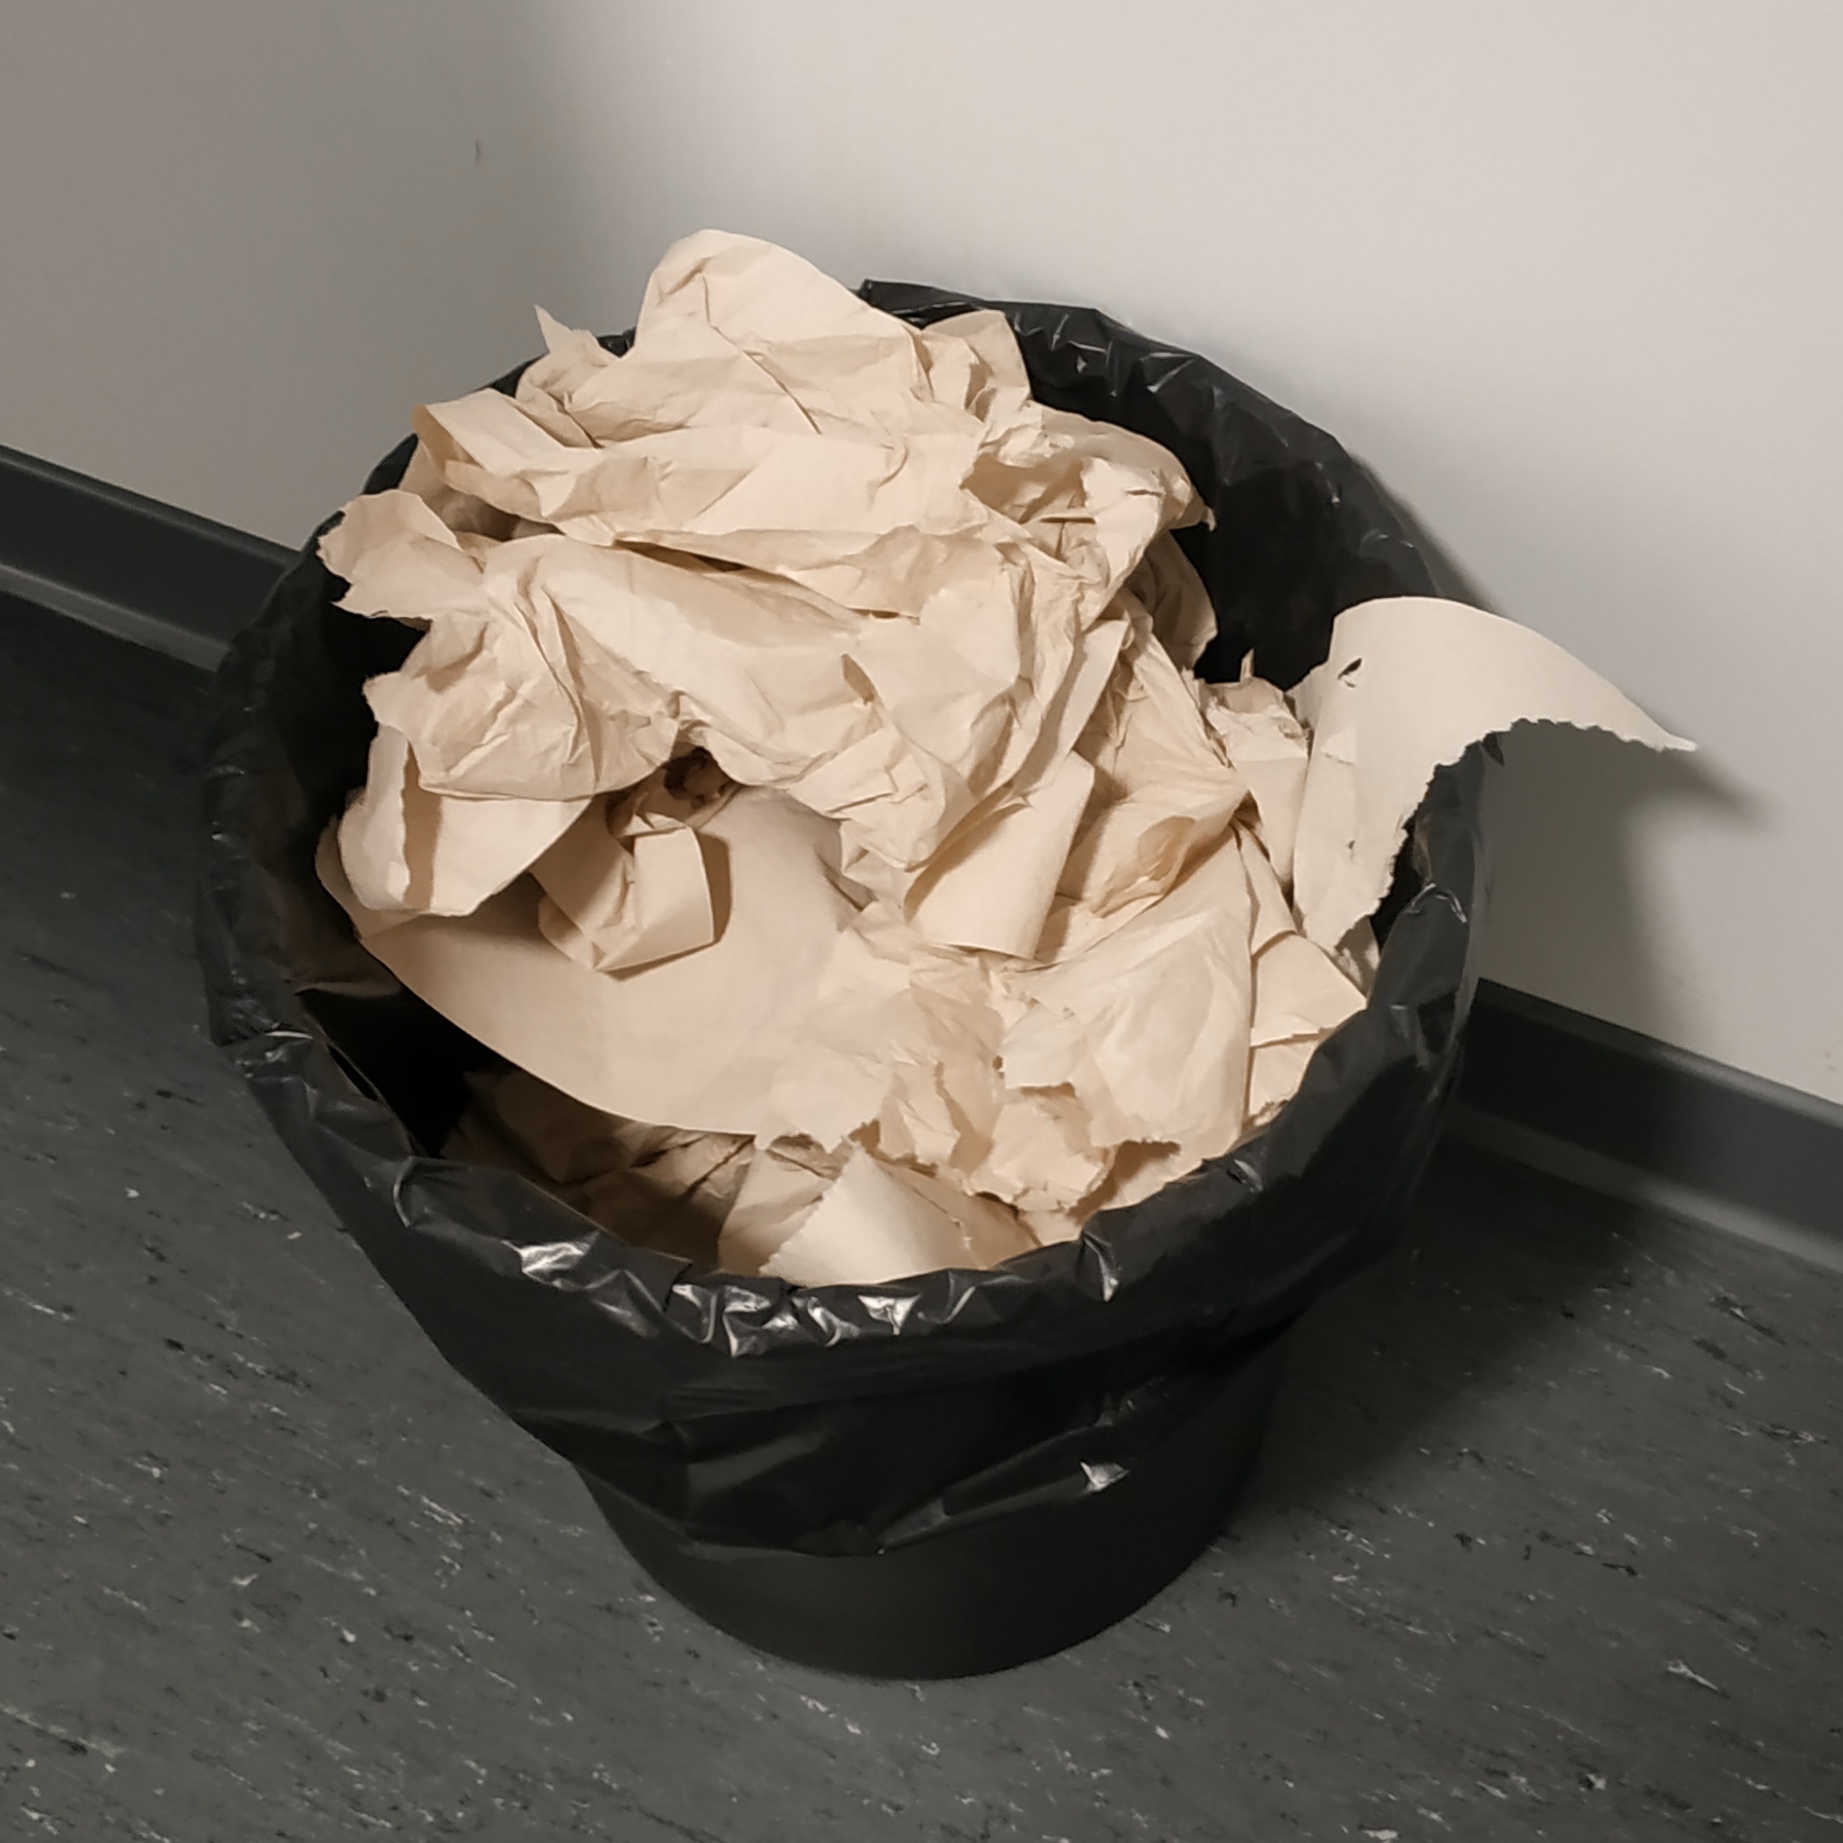 Une poubelle remplie en plongée. On y voit beaucoup de papier et un morceau du lavabo au-dessus de la poubelle.